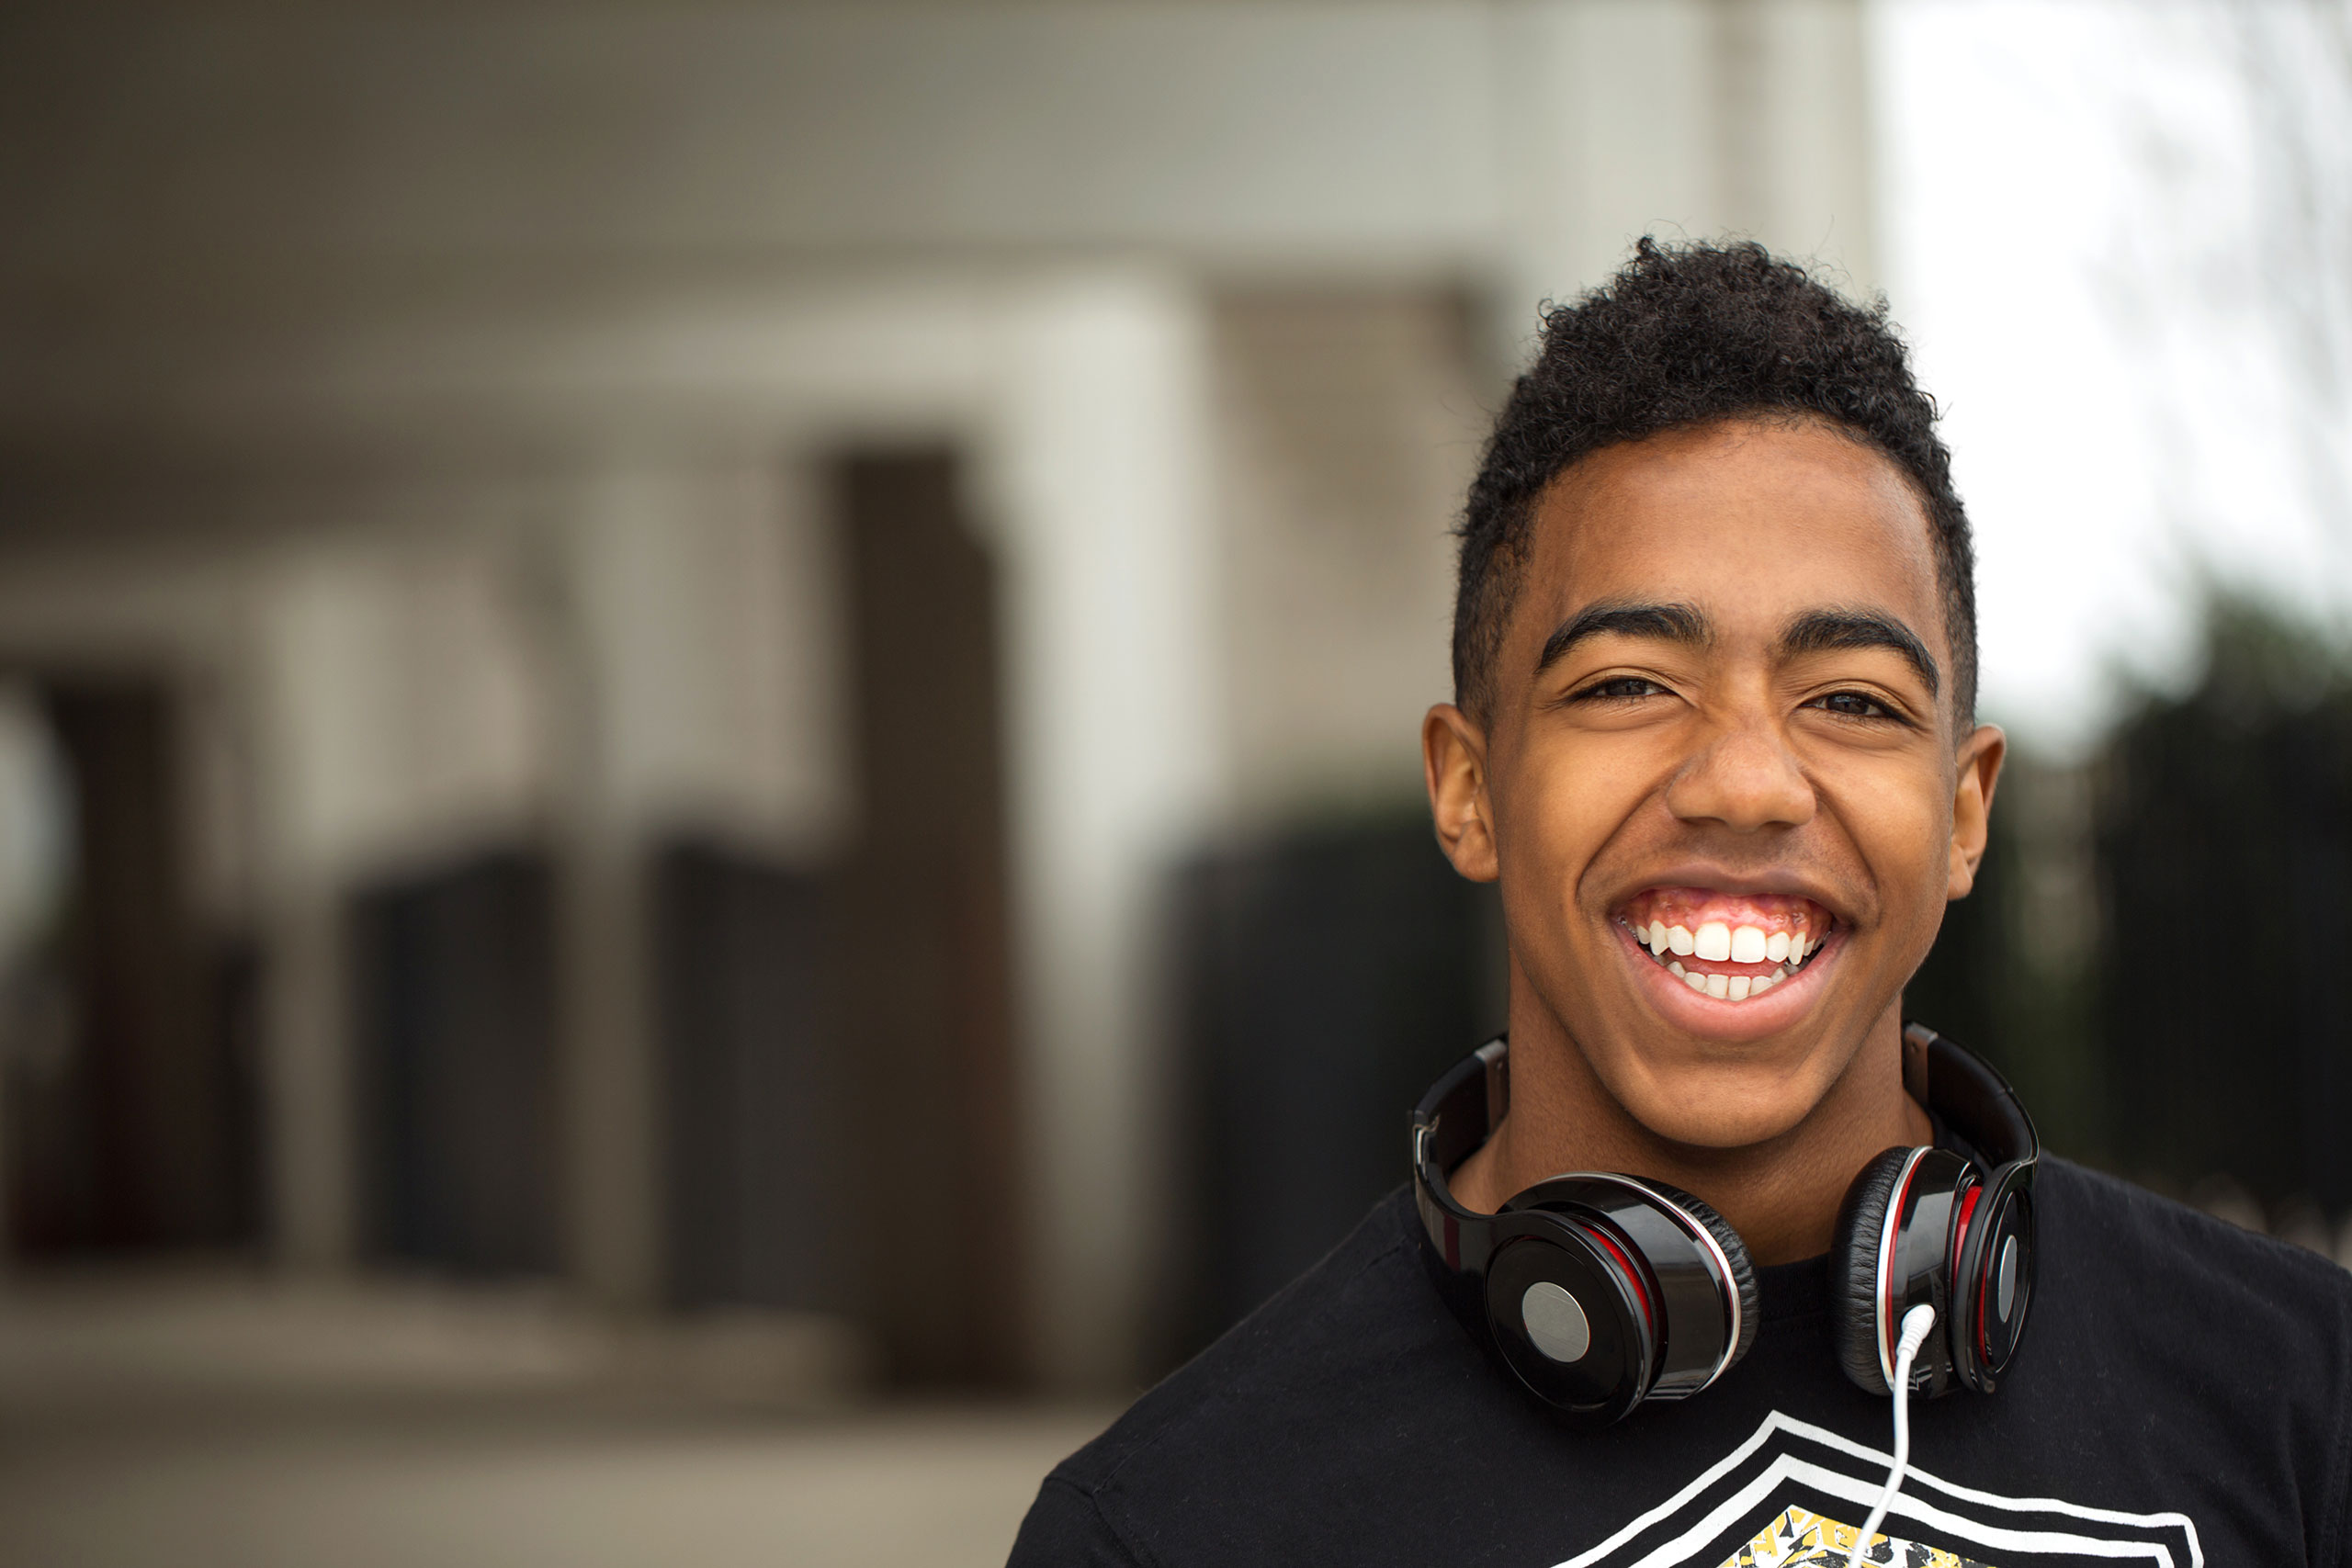 Student wearing headphones